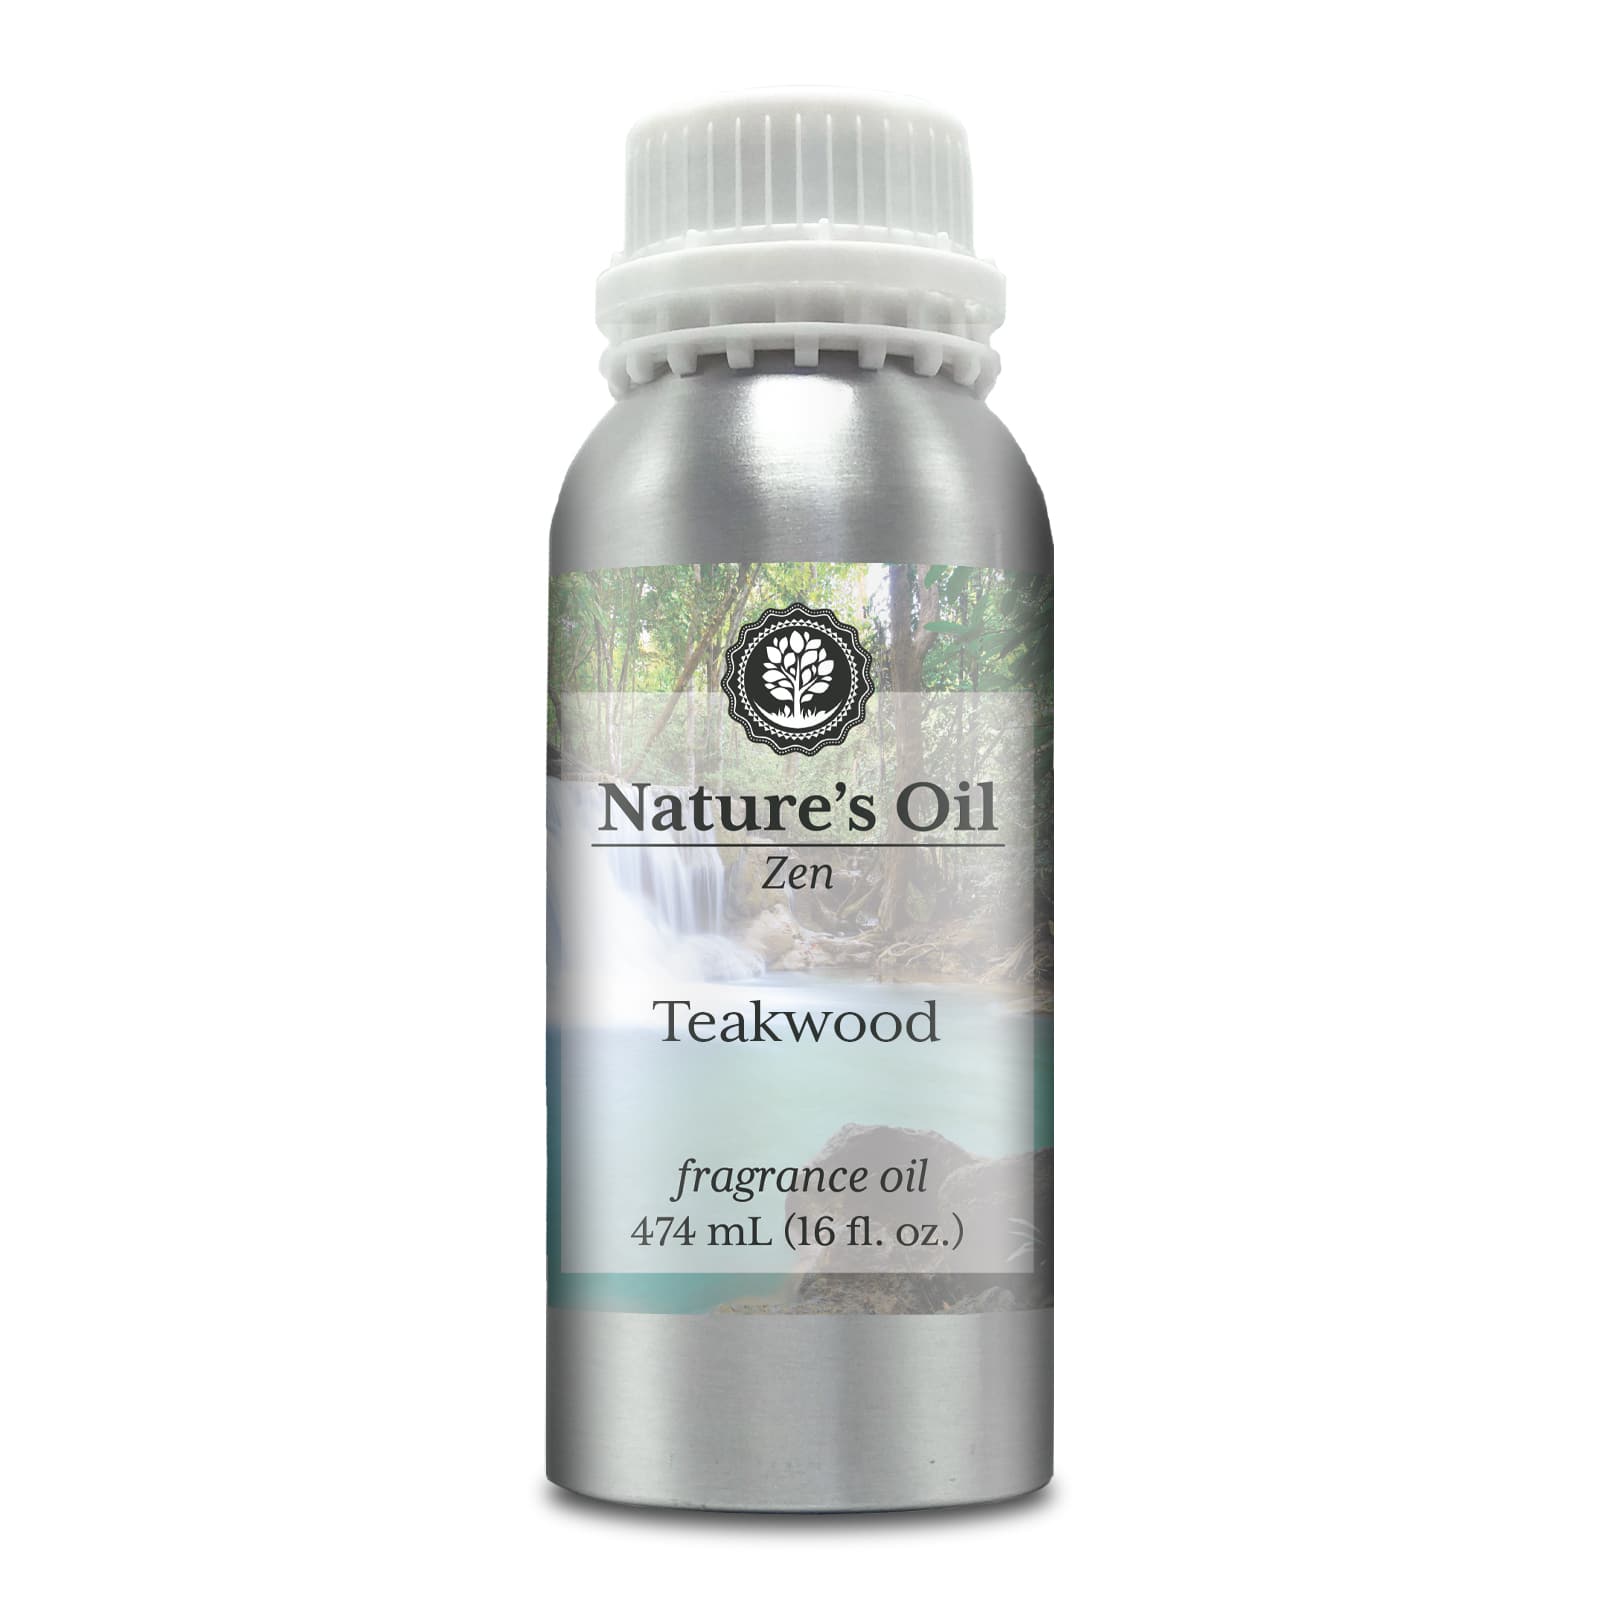 Nature's Oil Teakwood Fragrance Oil